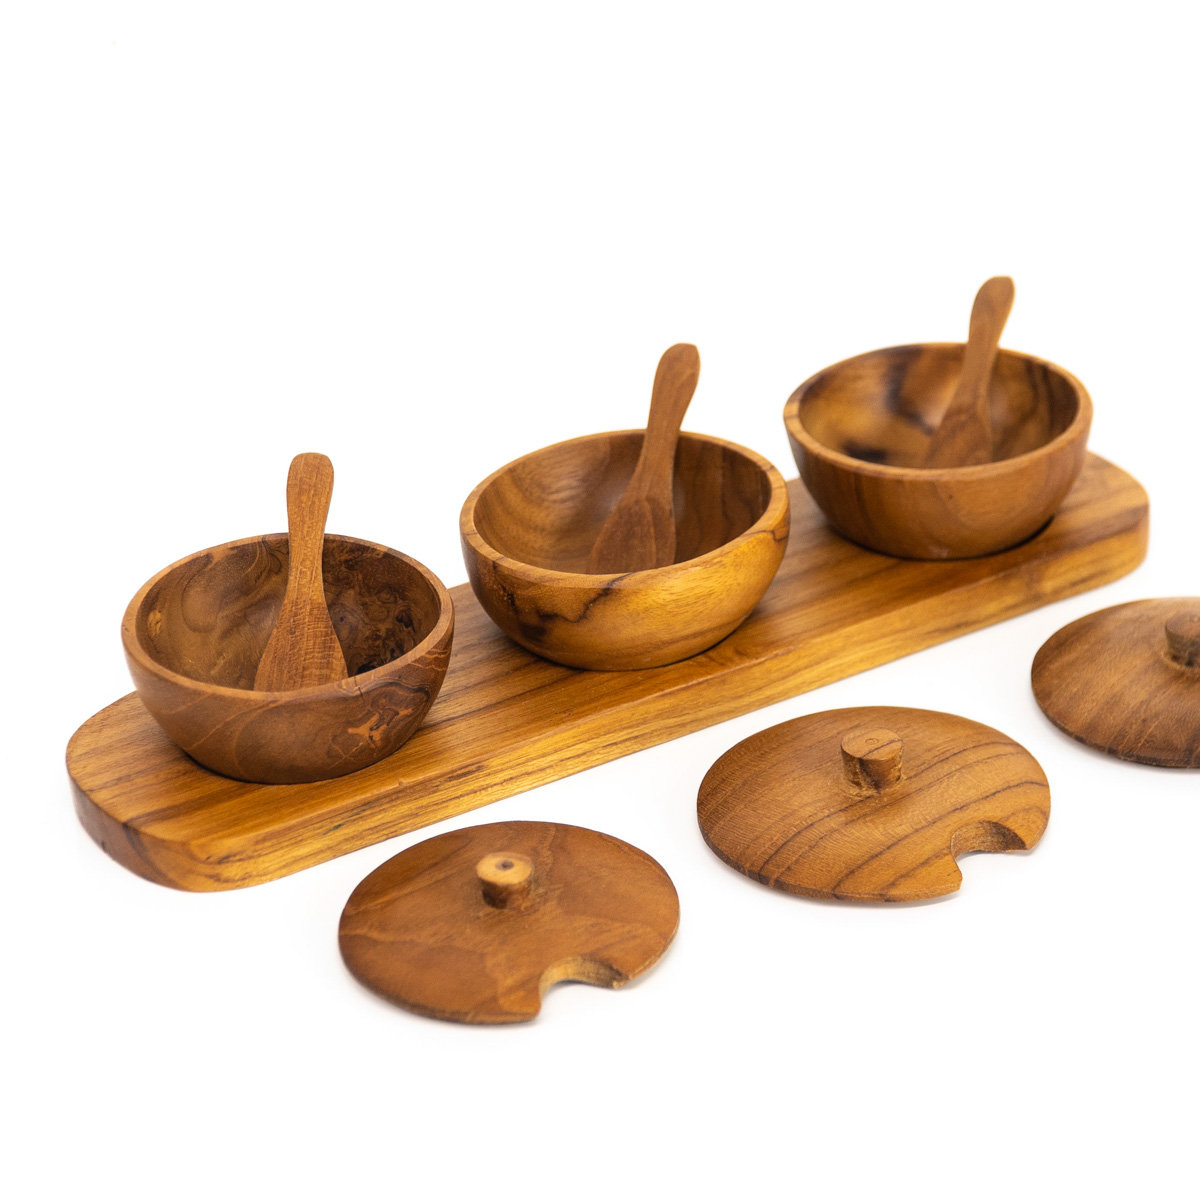 Handmade Serving Bowls, Set of 2 Acacia Dipping Bowls